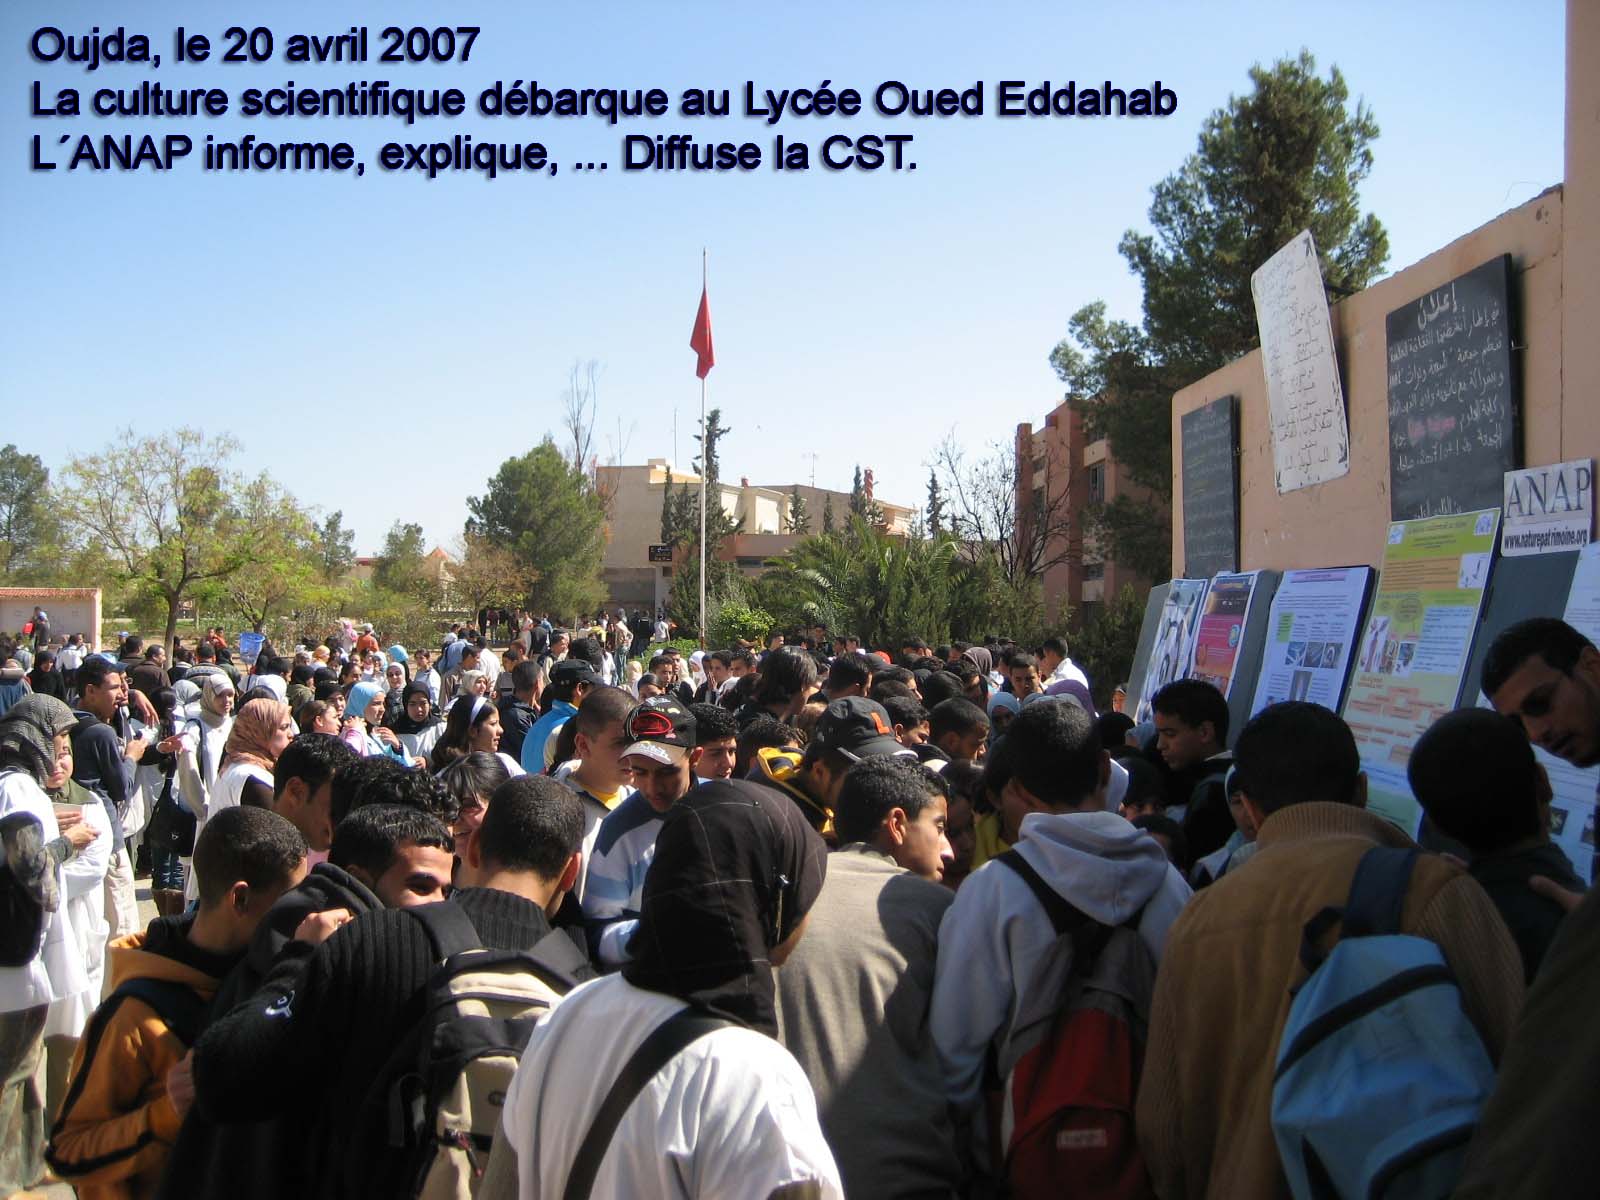 Visite Lycée Oued Eddahab